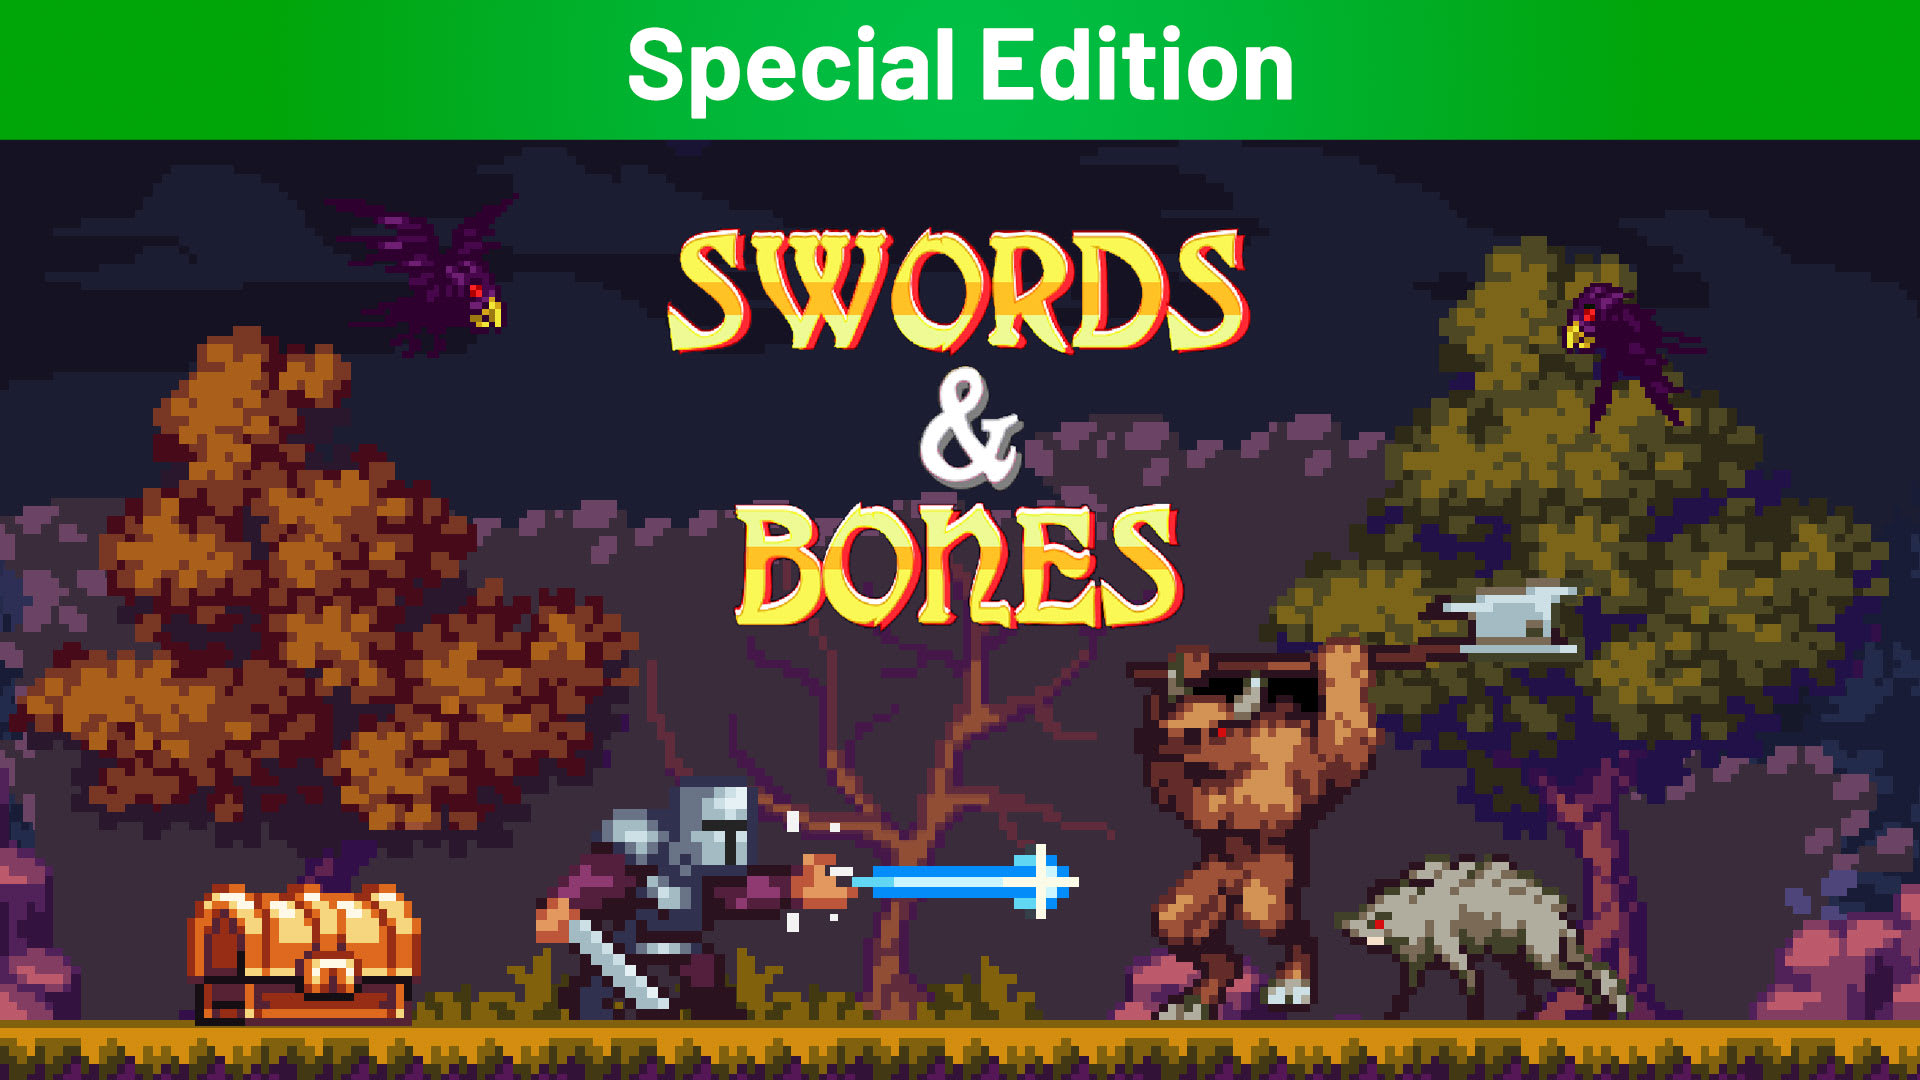 Swords & Bones Special Edition